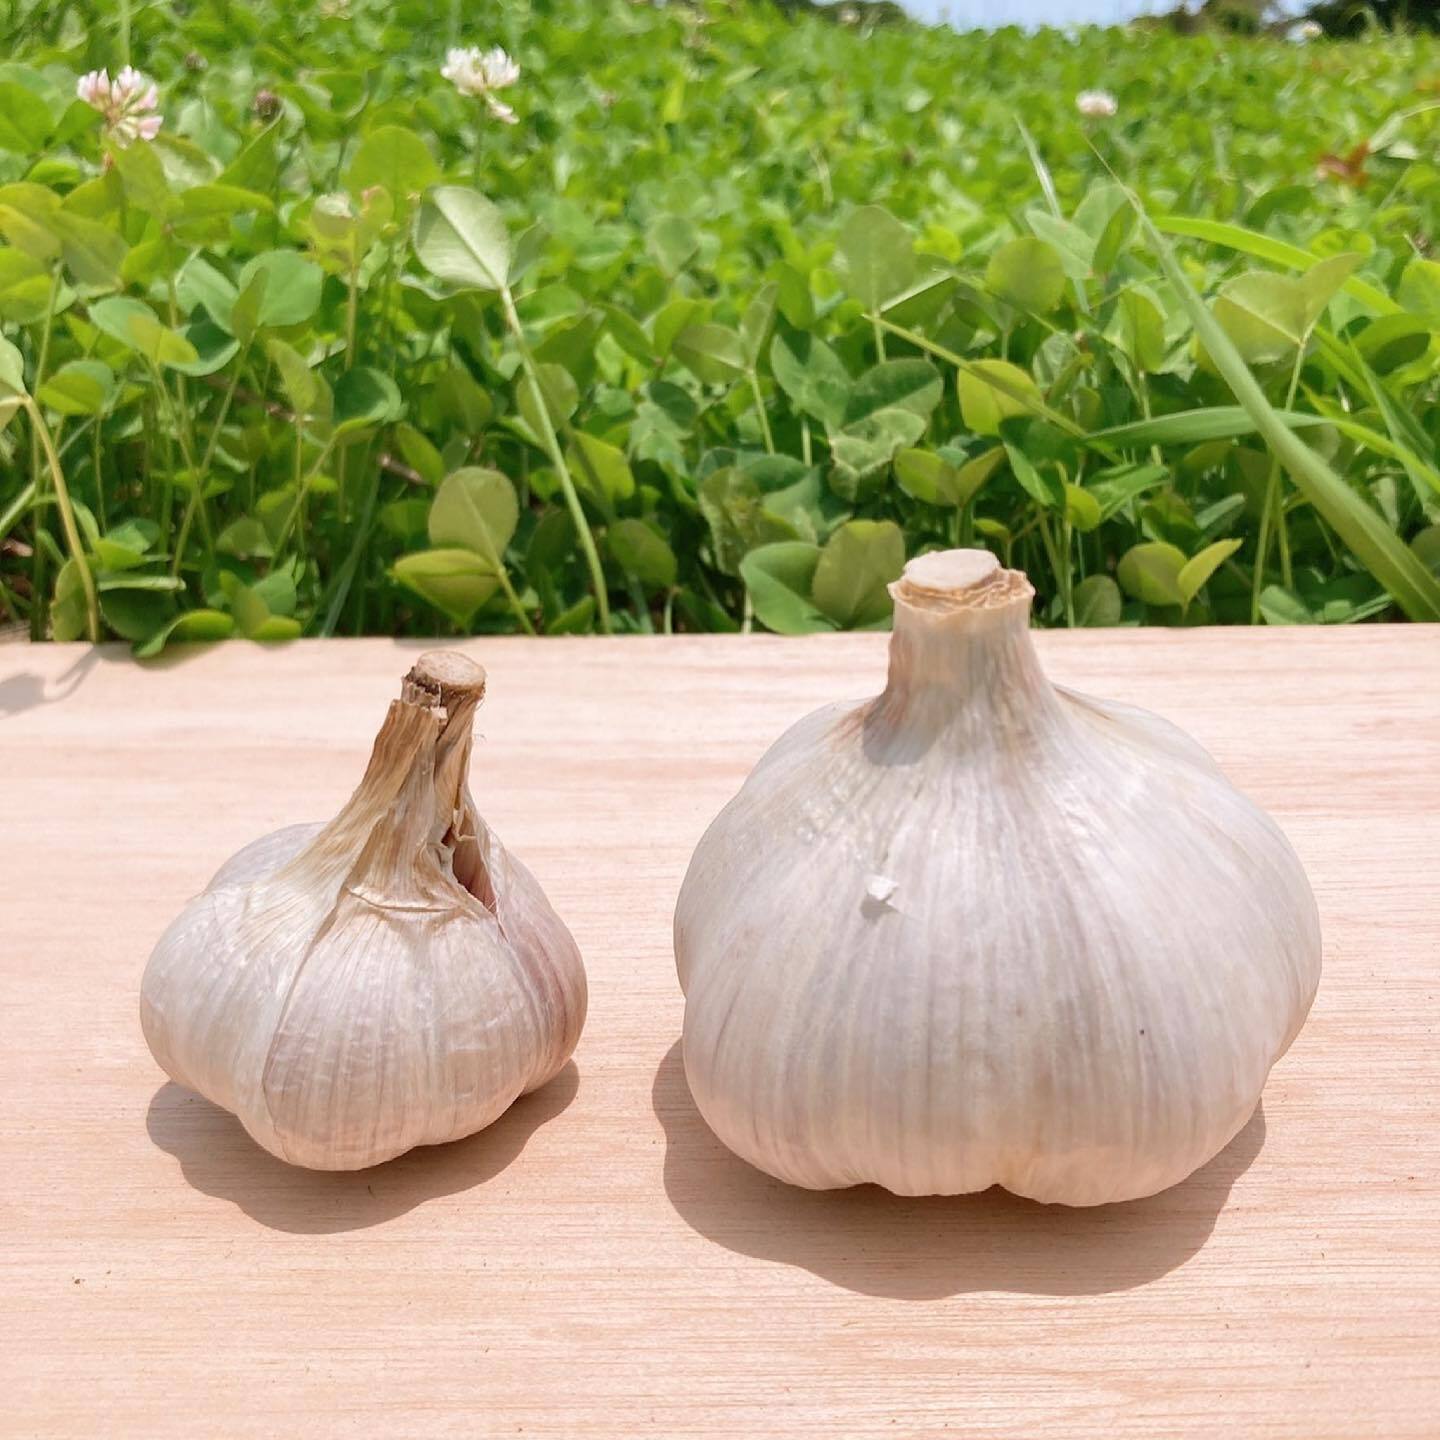 ジャンボニンニク、約20kg 熊本県産 - 野菜